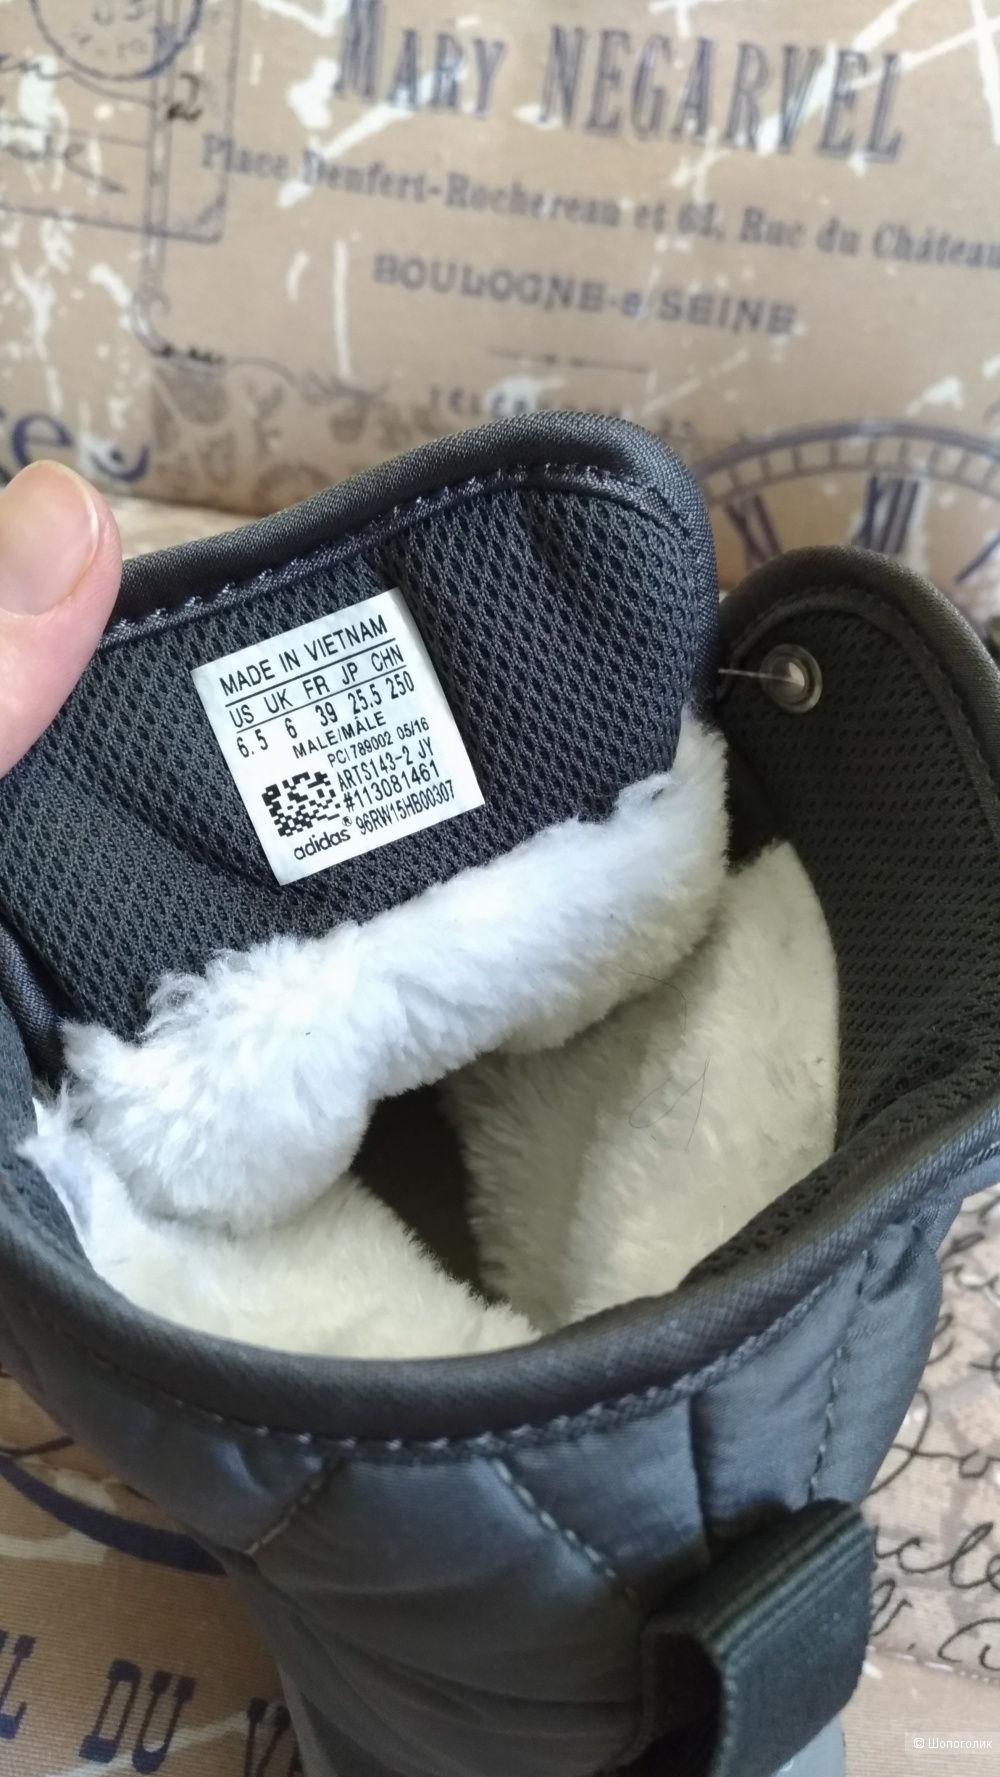 Кроссовки зимние Adidas, 38 размер